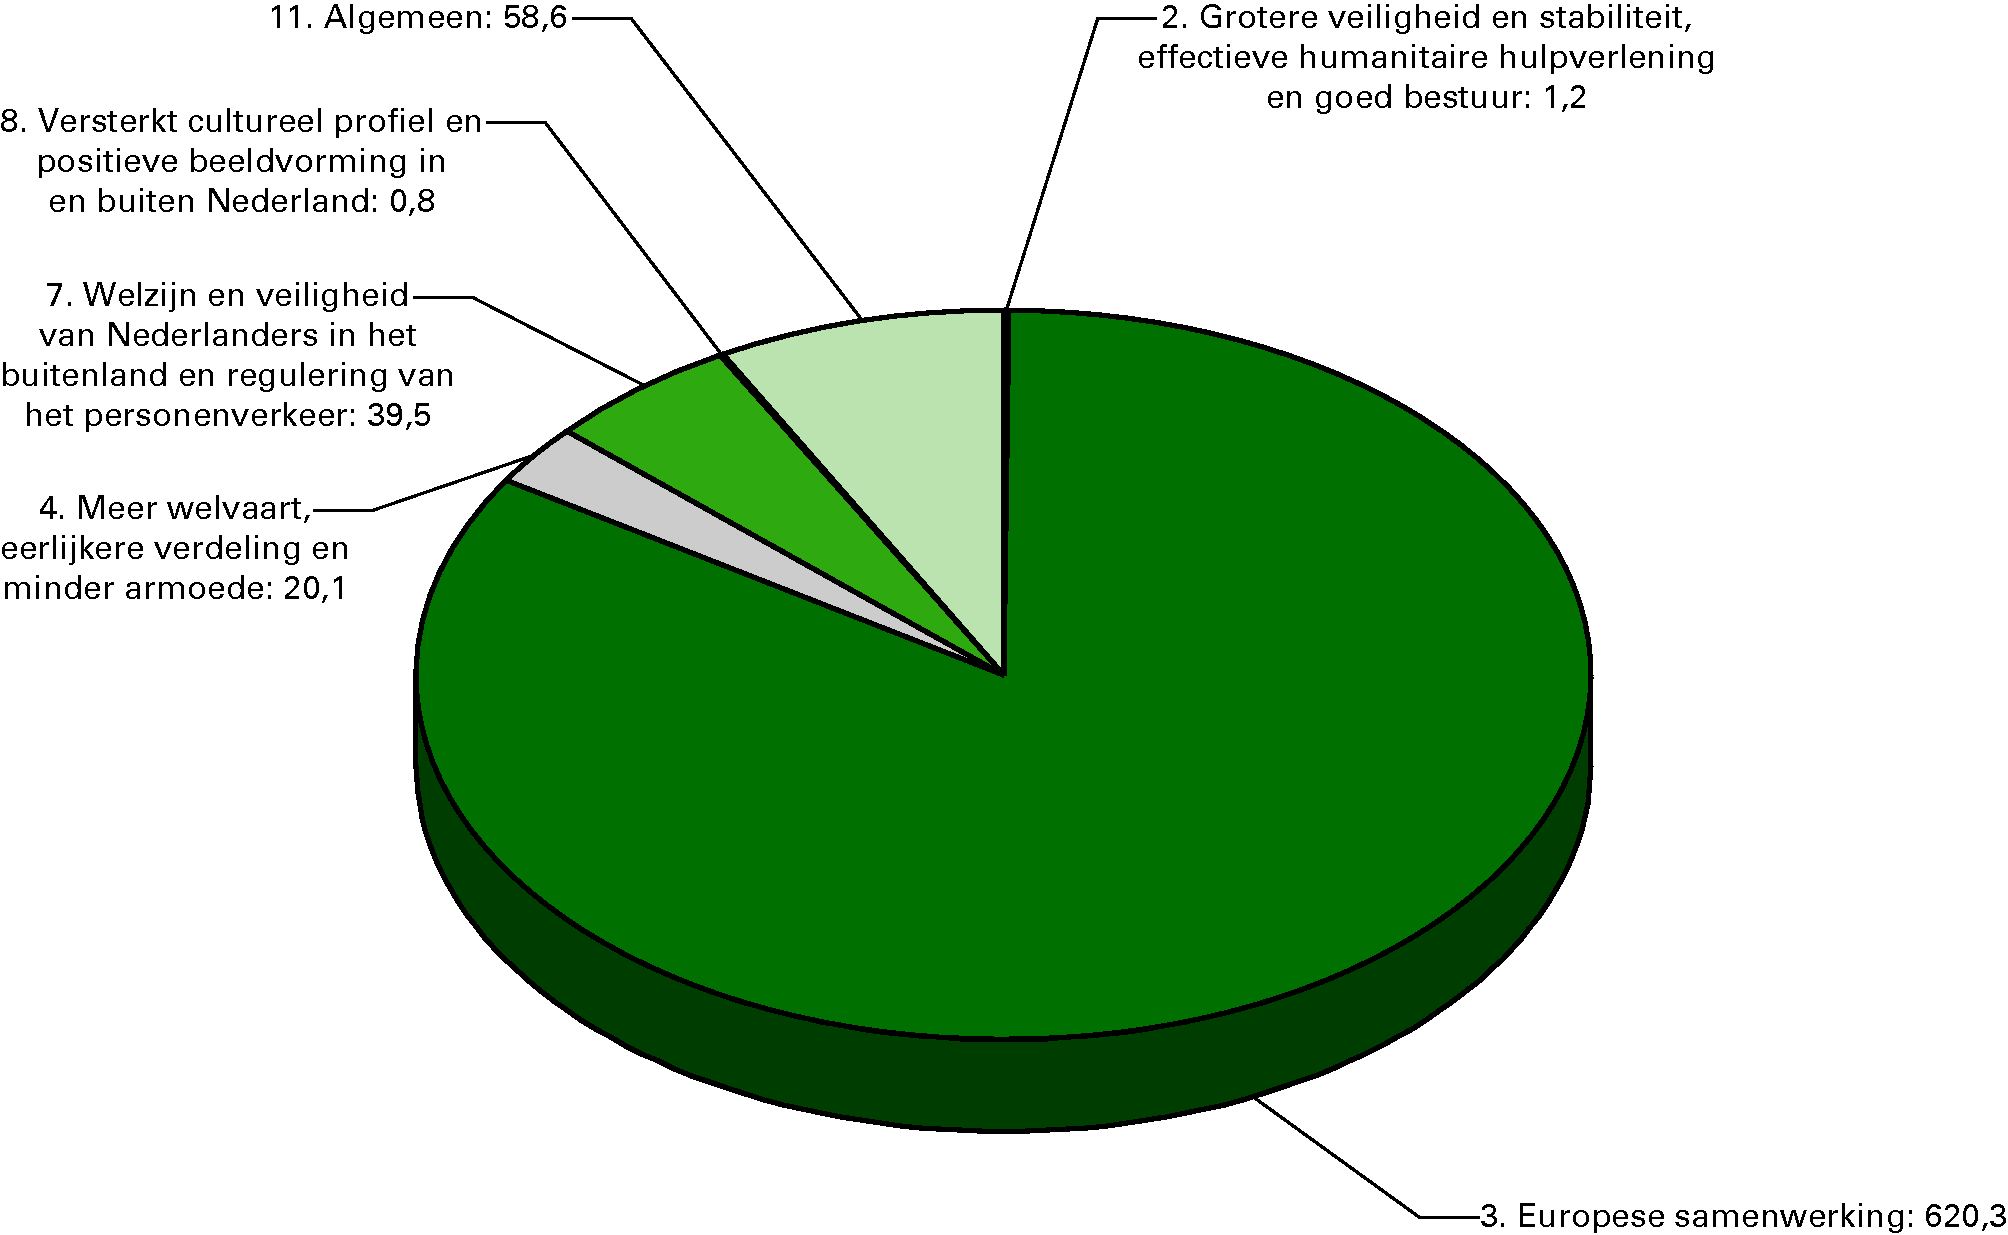 Begrote ontvangsten naar beleidsterrein voor 2012 (in EUR 				  mln)